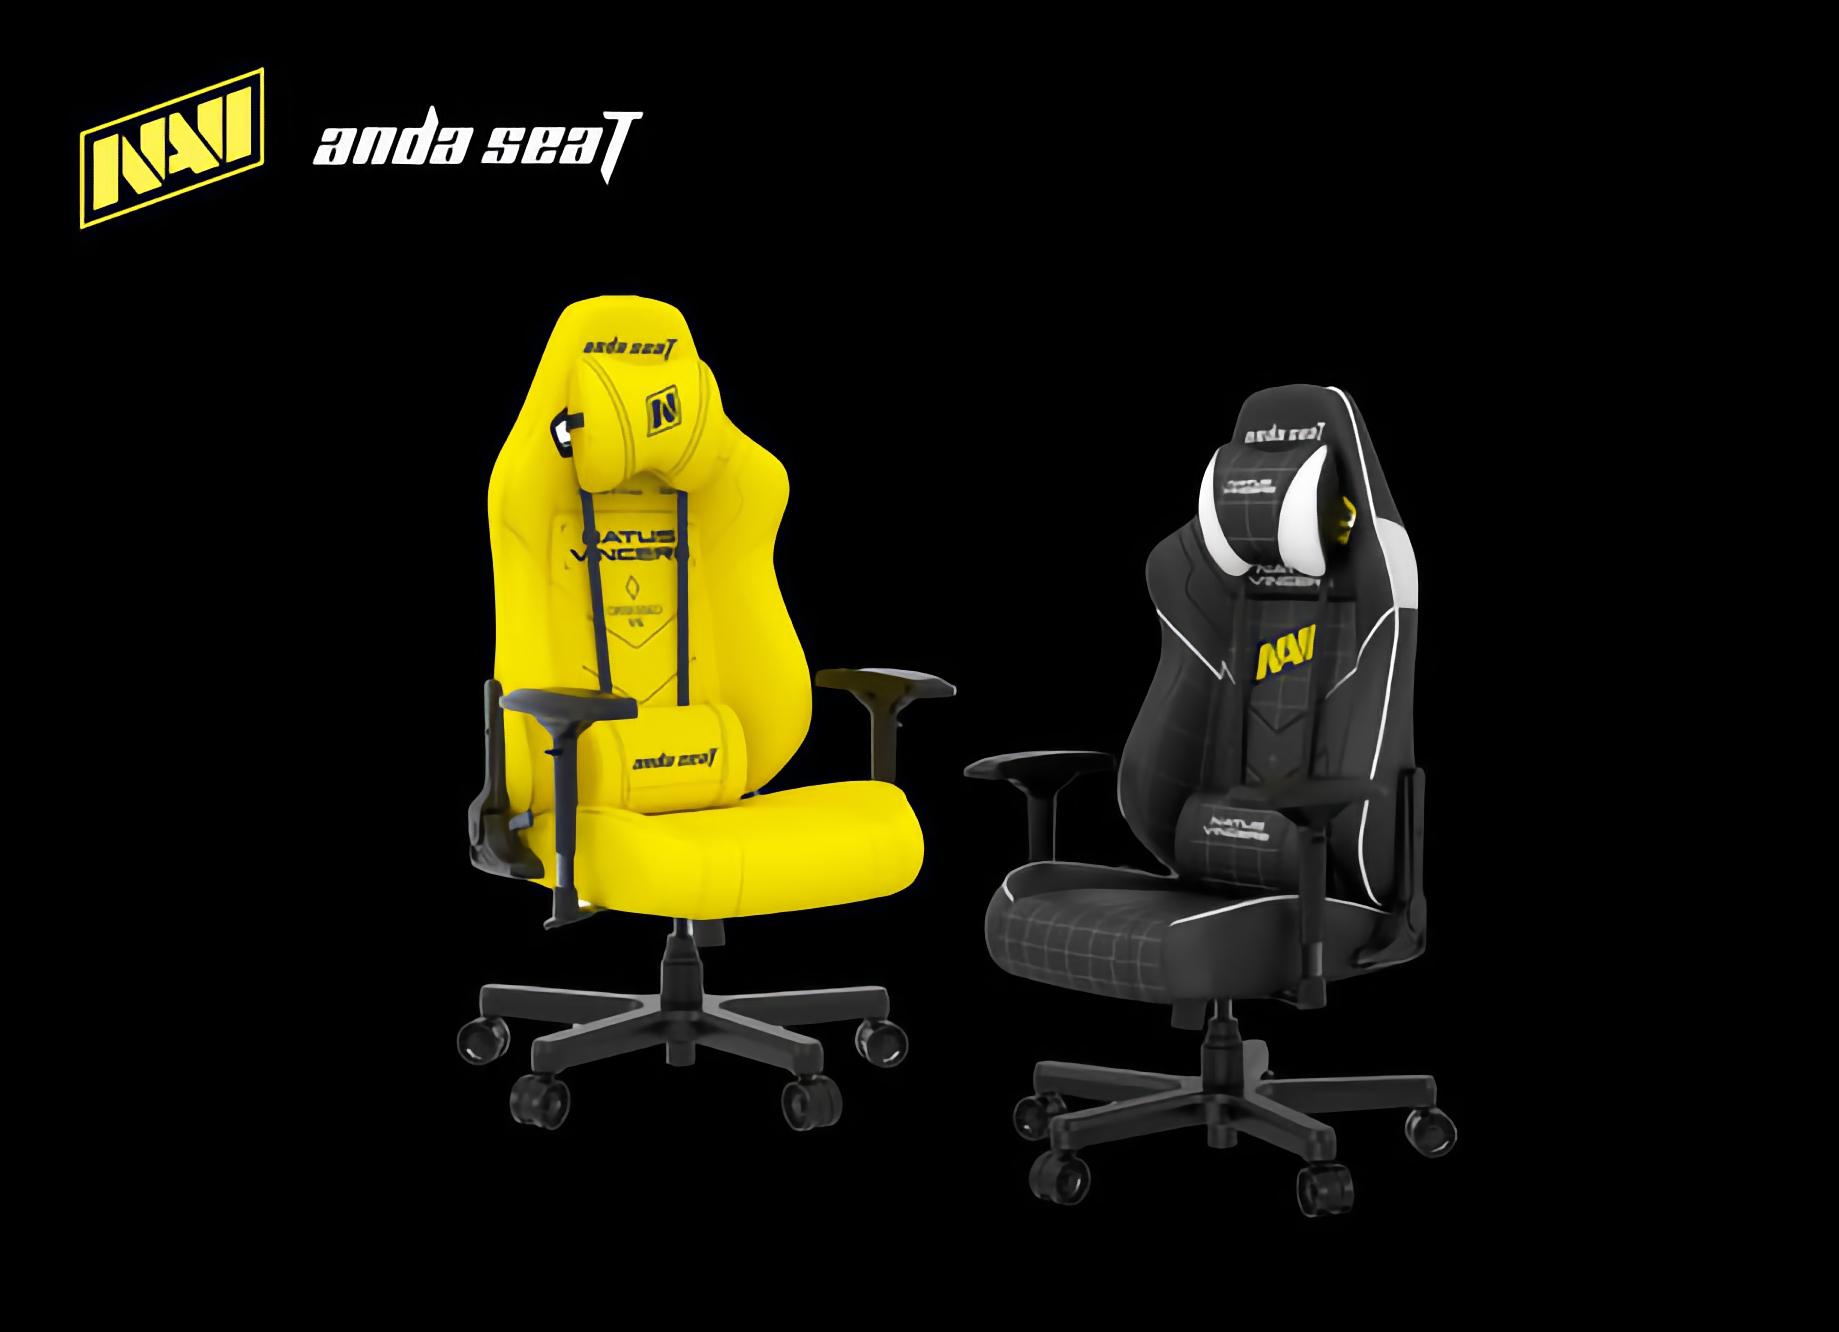 Anda Seat hat den Navi Edition Gaming-Stuhl vorgestellt, mit 10% Rabatt bei Vorbestellung